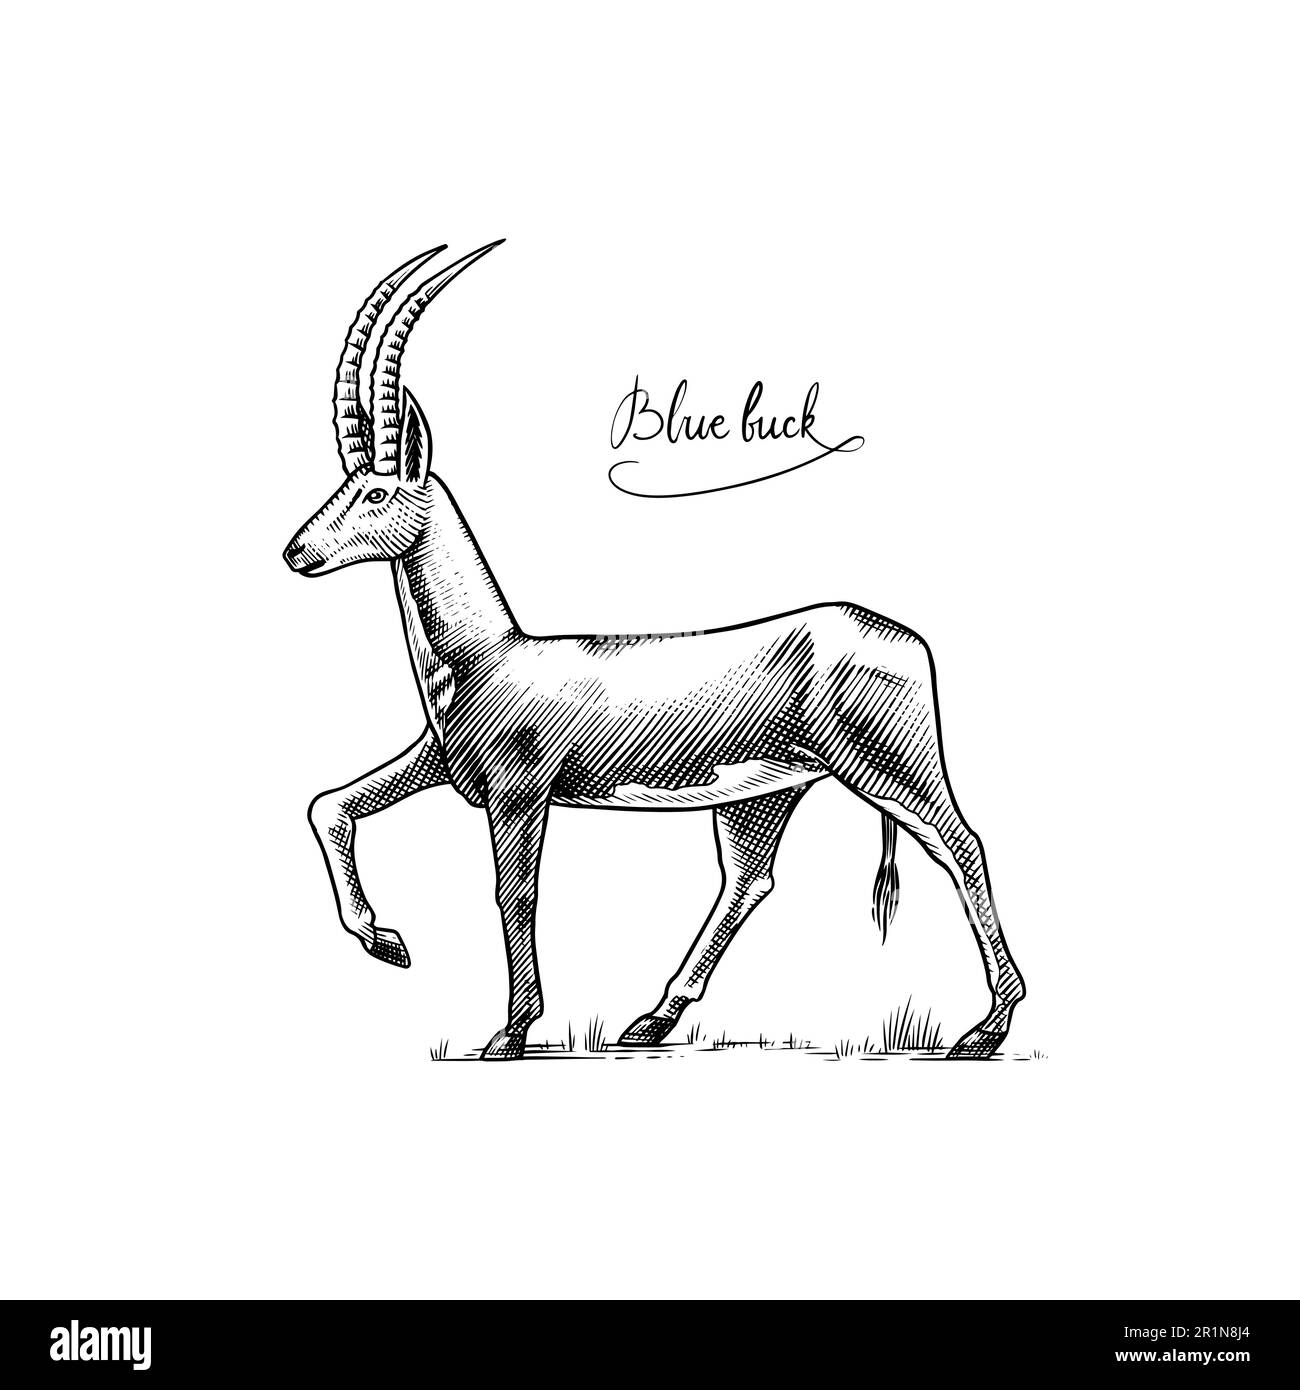 Bluebuck ou antilope bleu ou roan. Animal mammifère éteint. Illustration vectorielle gravée à la main en coupe de bois style graphique vintage. Illustration de Vecteur